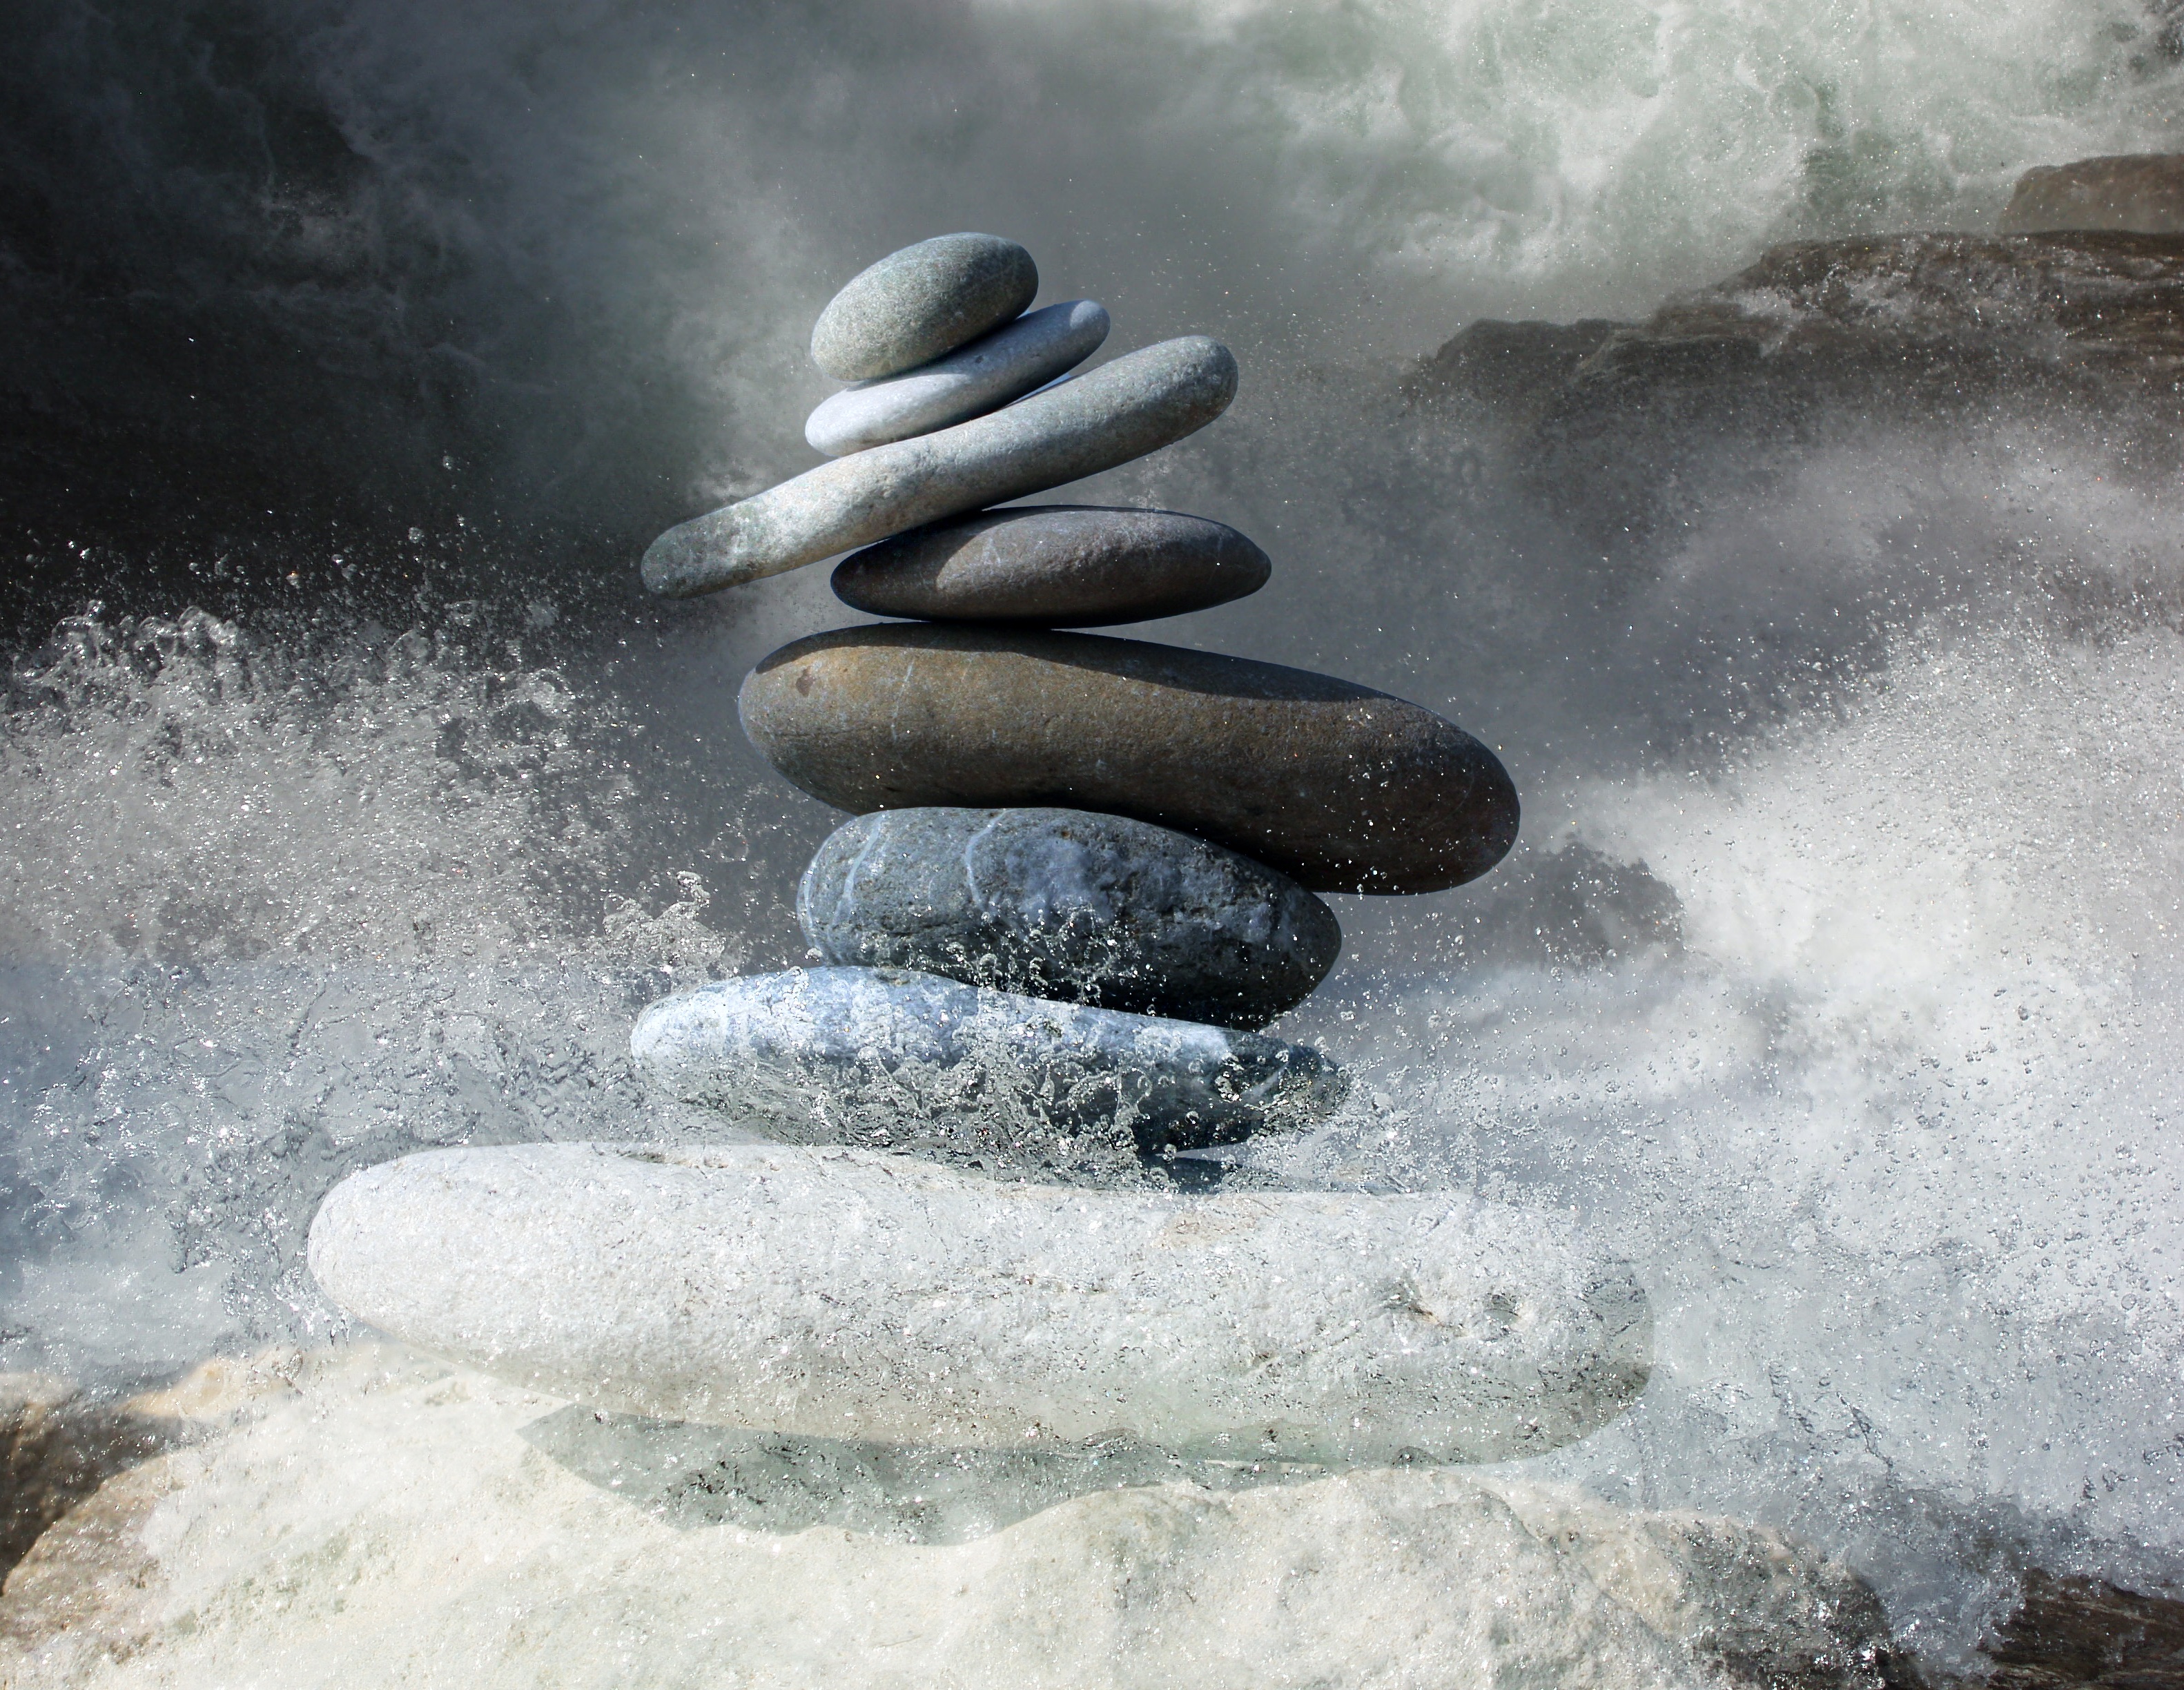 Zen Stones with Water Splashing Around Them by Karen Arnold